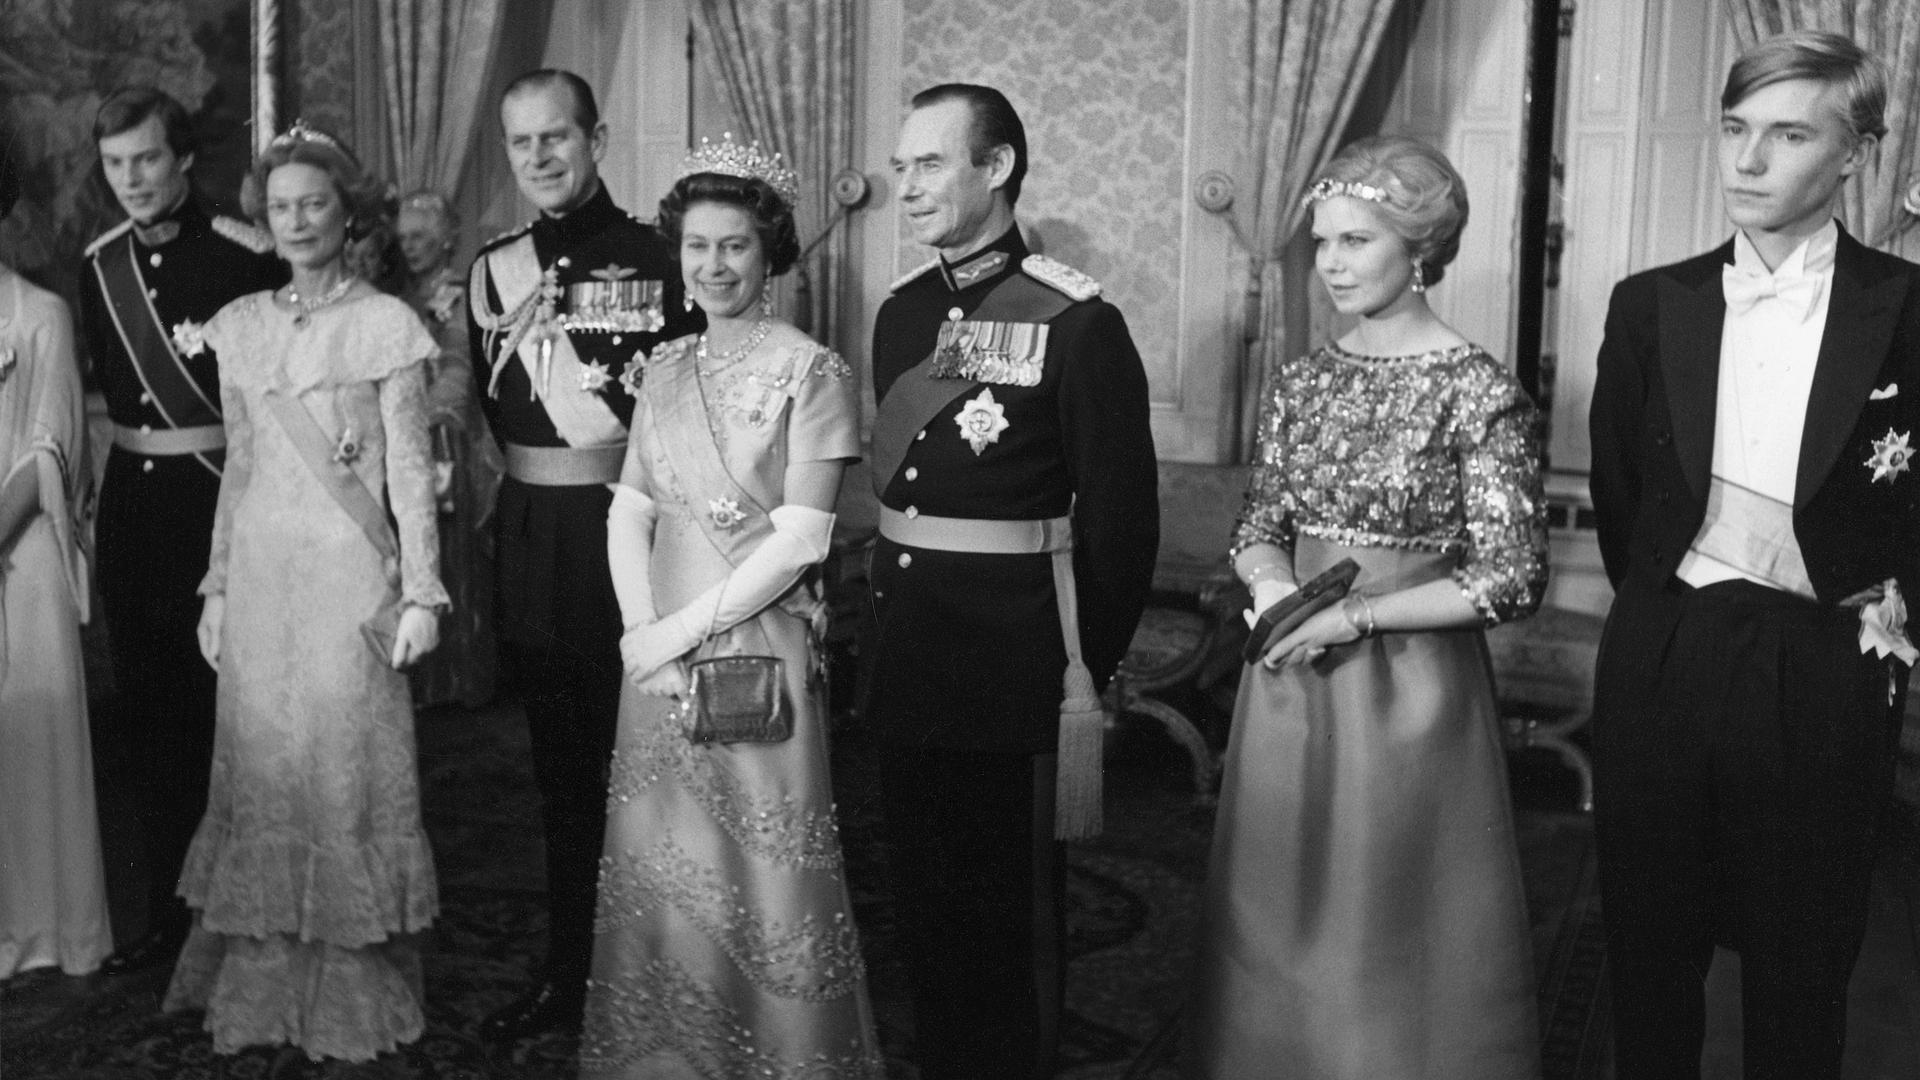 HENRI — Grossherzog von Luxemburg ab dem 7. Oktober 2000, 1955 * / JOSEPHINE-CHARLOTTE + — Grossherzogin von Luxemburg vom 12.11.1964 - 07.10.2000, Prinzessin von Belgien, 1927 * - 2005 + / PHILIP — Prinz von Grossbritannien, 1921 *, Herzog von Edinburgh, Gemahl von Königin Elisabeth II. / ELIZABETH II. — Königin von Grossbritannien und Nordirland seit 1952, 1926 * / JEAN — Grossherzog von Luxemburg vom 12.11.1964 - 07.10.2000, Herzog von Nassau, Prinz von Bourbon Parma, 1921 * / MARIE-ASTRID — Prinzessin von Luxemburg, 1954 *, Erzherzogin von Österreich / JEAN NASSAU — Prinz von Luxemburg, 1957 *